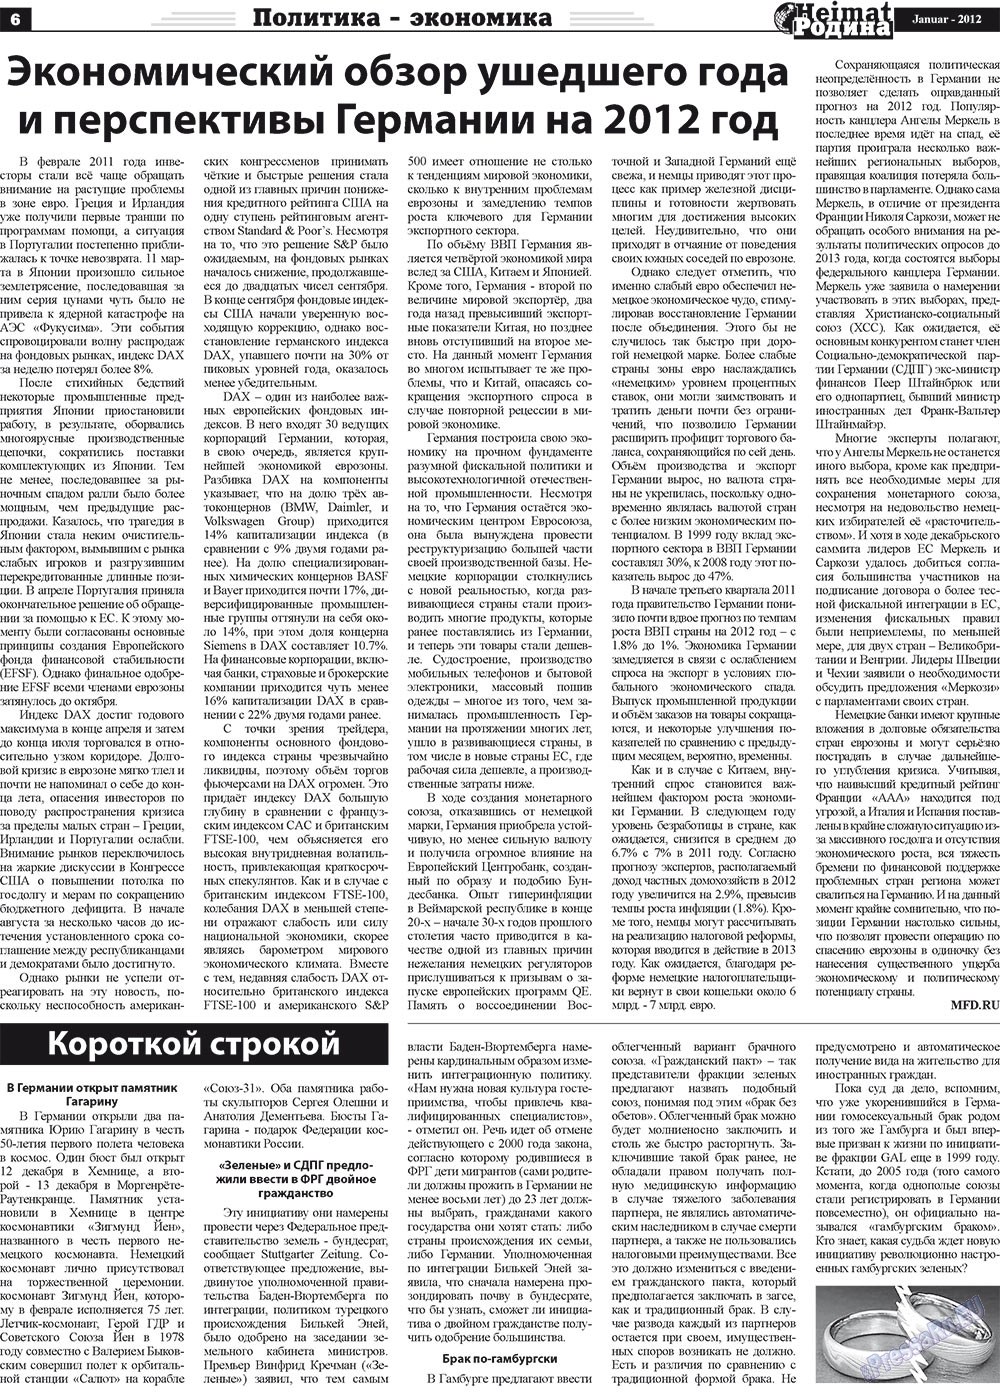 Heimat-Родина (Zeitung). 2012 Jahr, Ausgabe 1, Seite 6